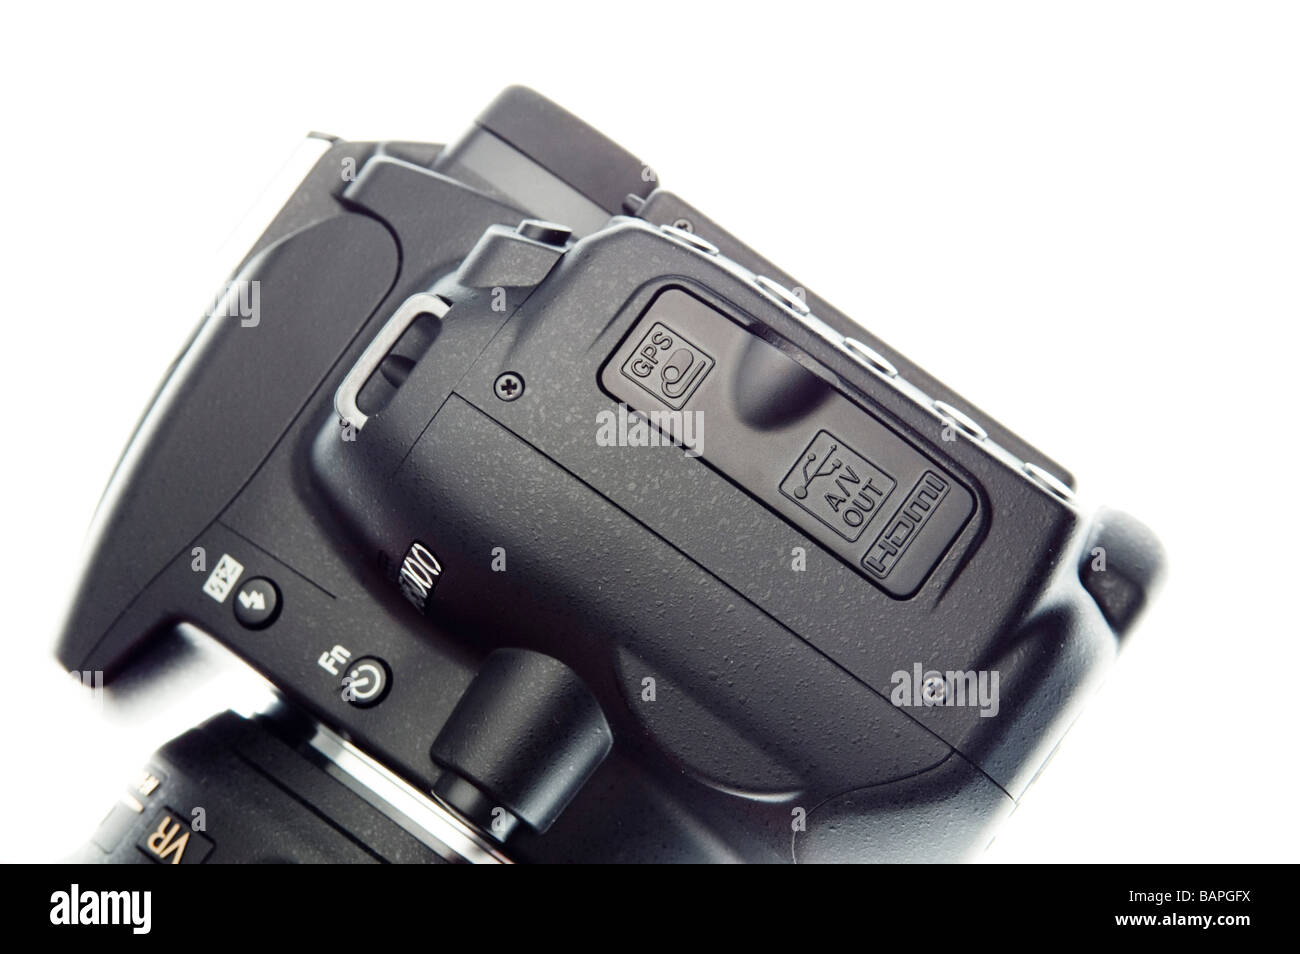 Digitale SLR-Kamera Nikon D5000 HD video - Kautschuk decken für Remote Control, USB und HDMI-Schnittstelle Verbindungen Stockfoto